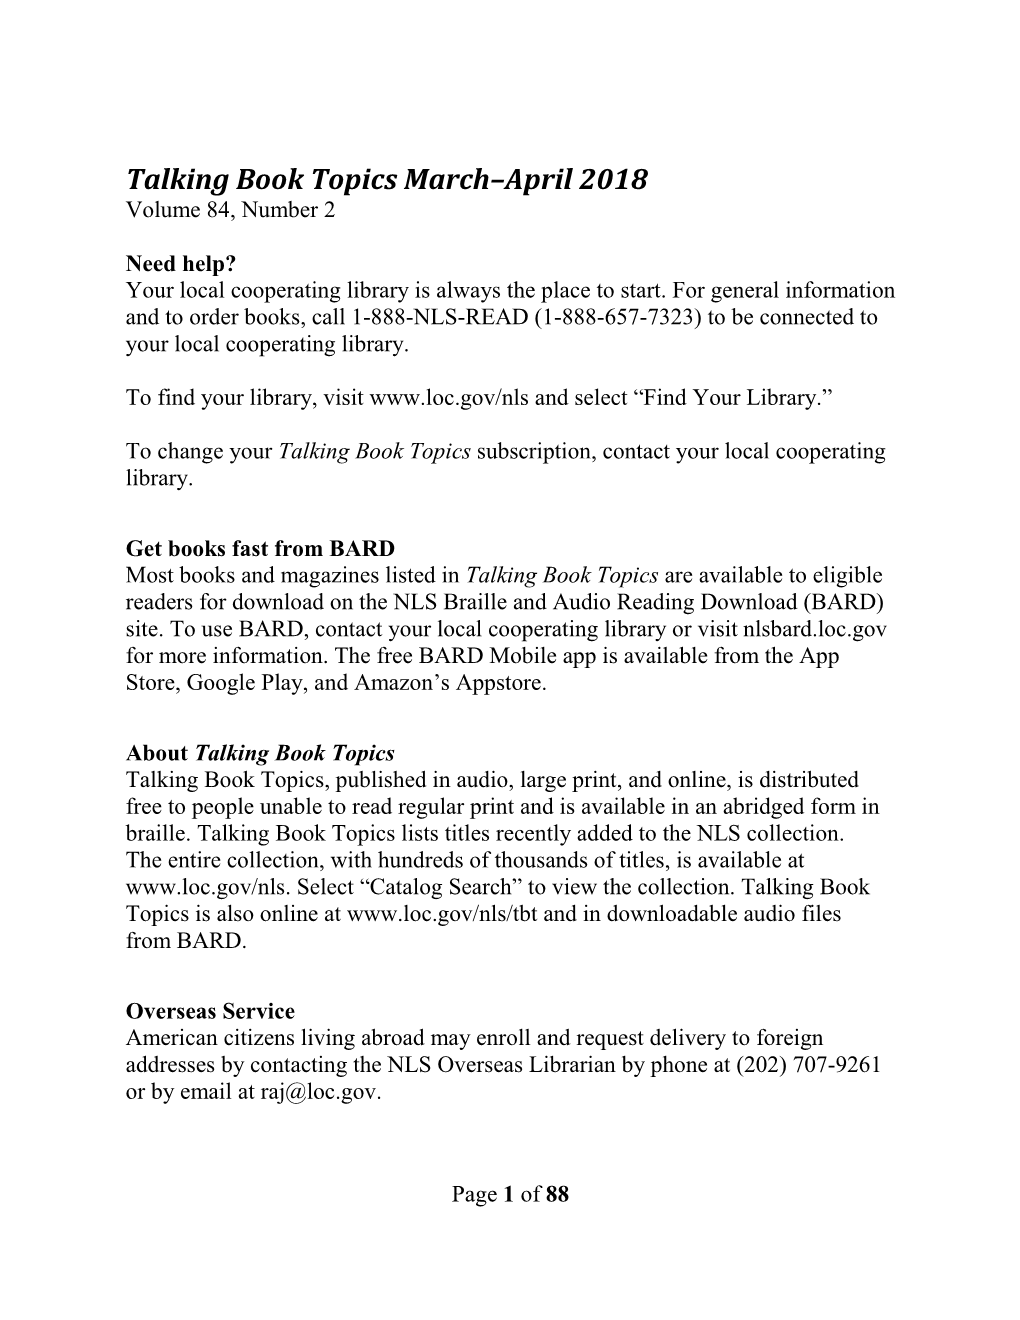 Talking Book Topics, March-April 2018